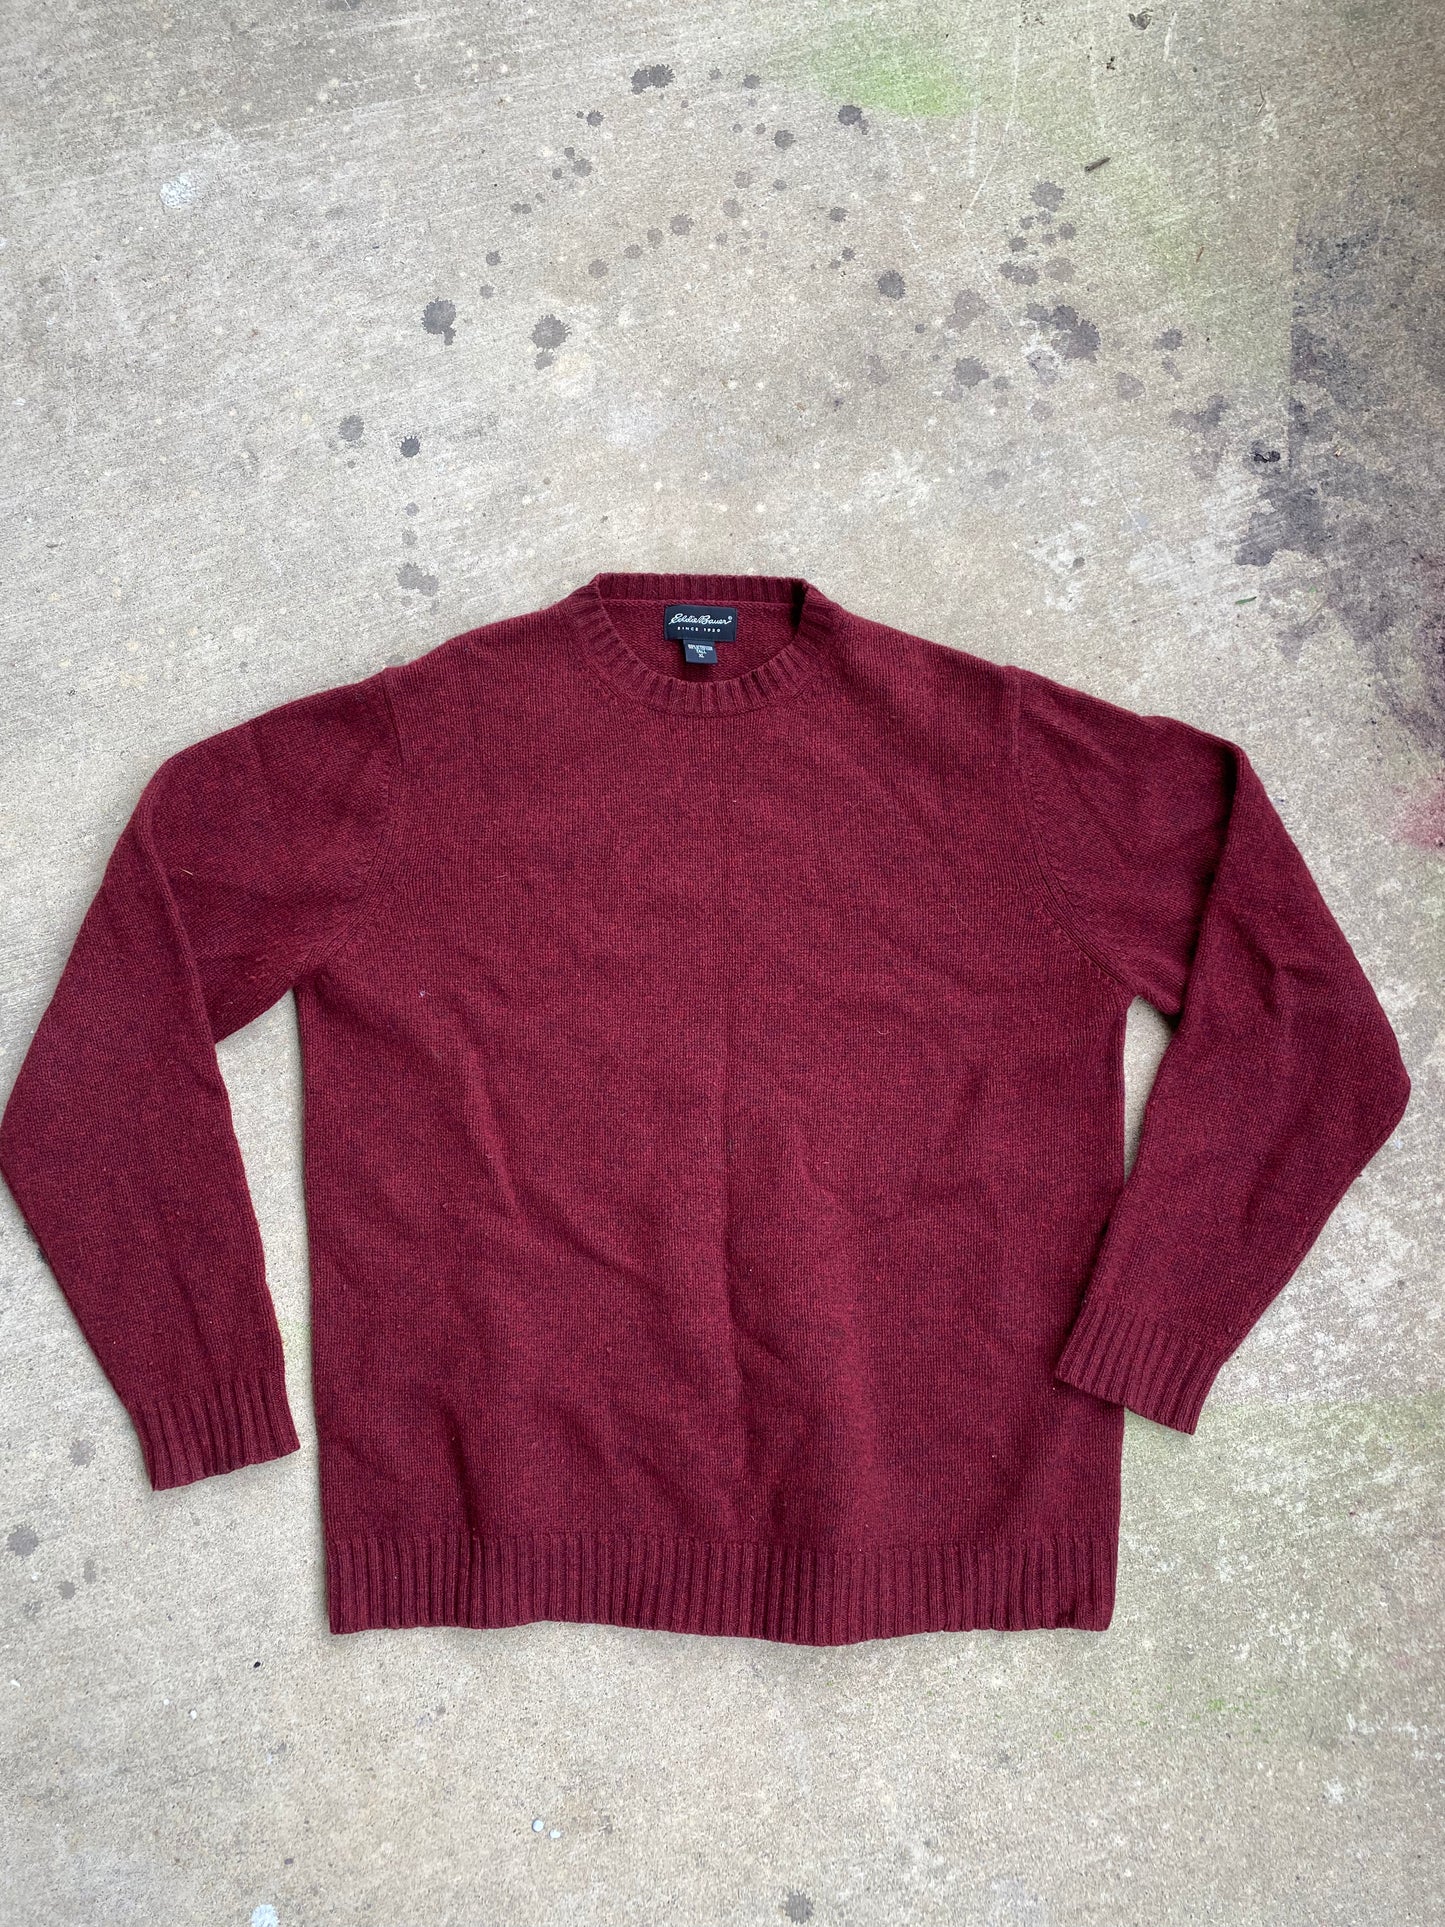 Eddie Bauer Wool Red Sweater - Brimm Archive Wardrobe Research